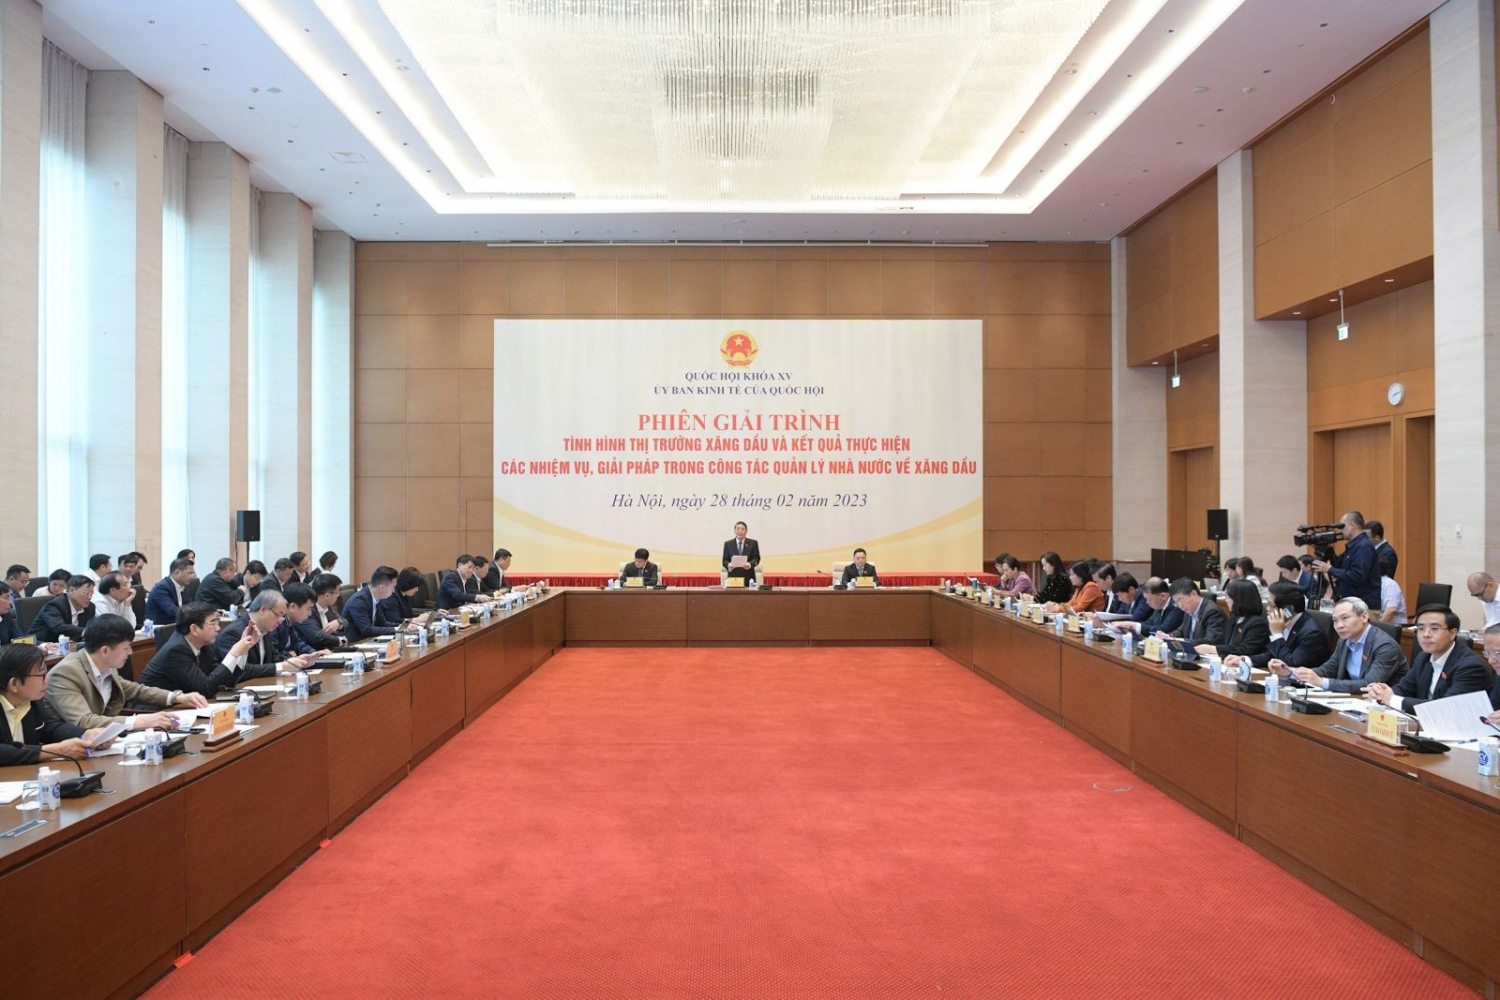 Phó Chủ tịch Quốc hội Nguyễn Đức Hải: Phải sớm đánh giá lại tình hình thị trường xăng dầu